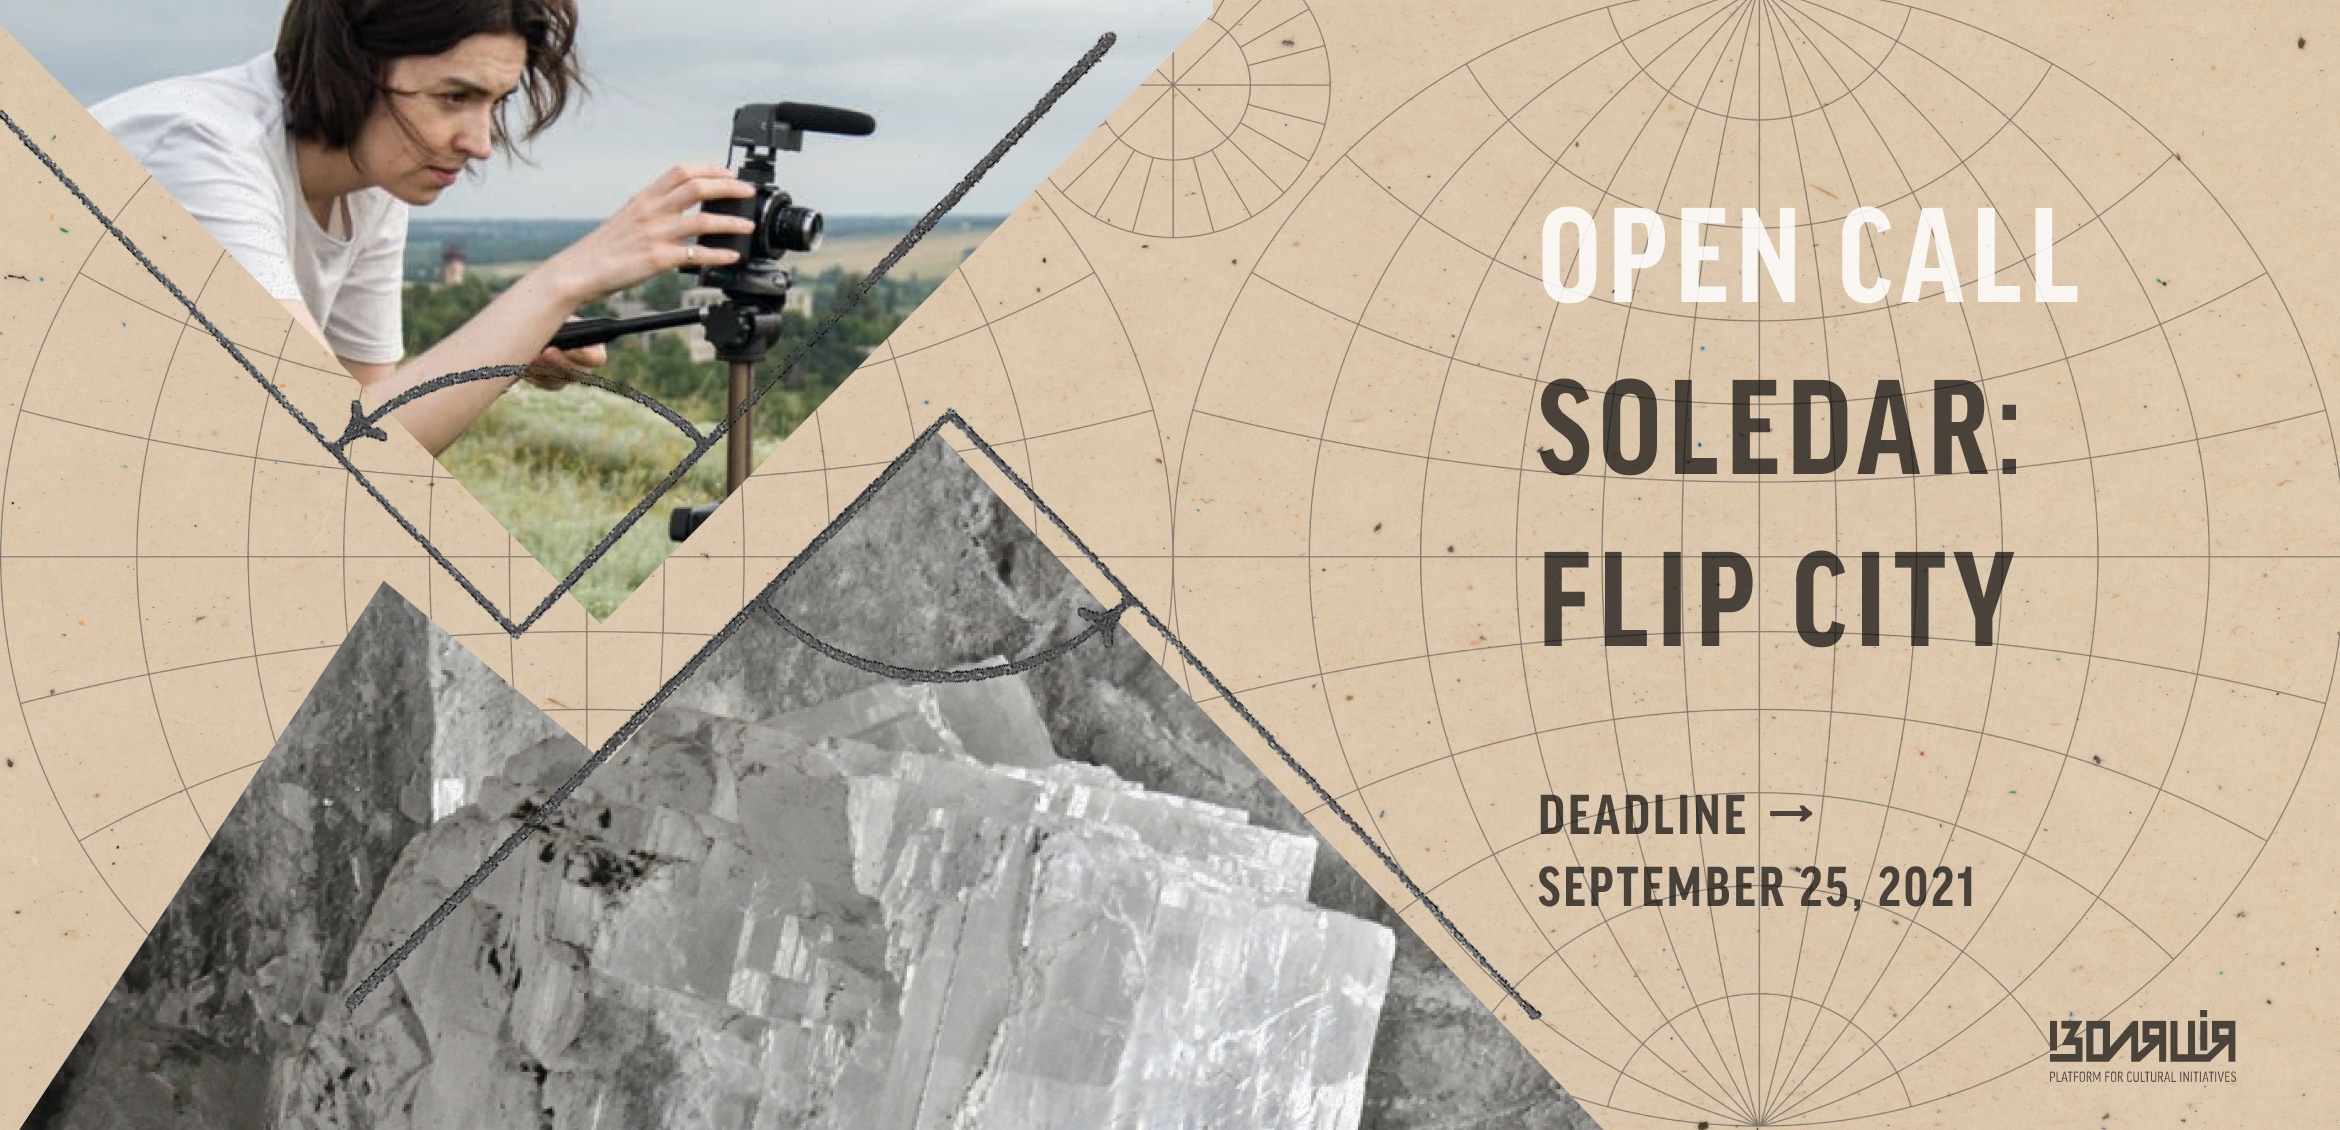 Фонд ІЗОЛЯЦІЯ оголошує open call на участь в резиденції Soledar: Flip City